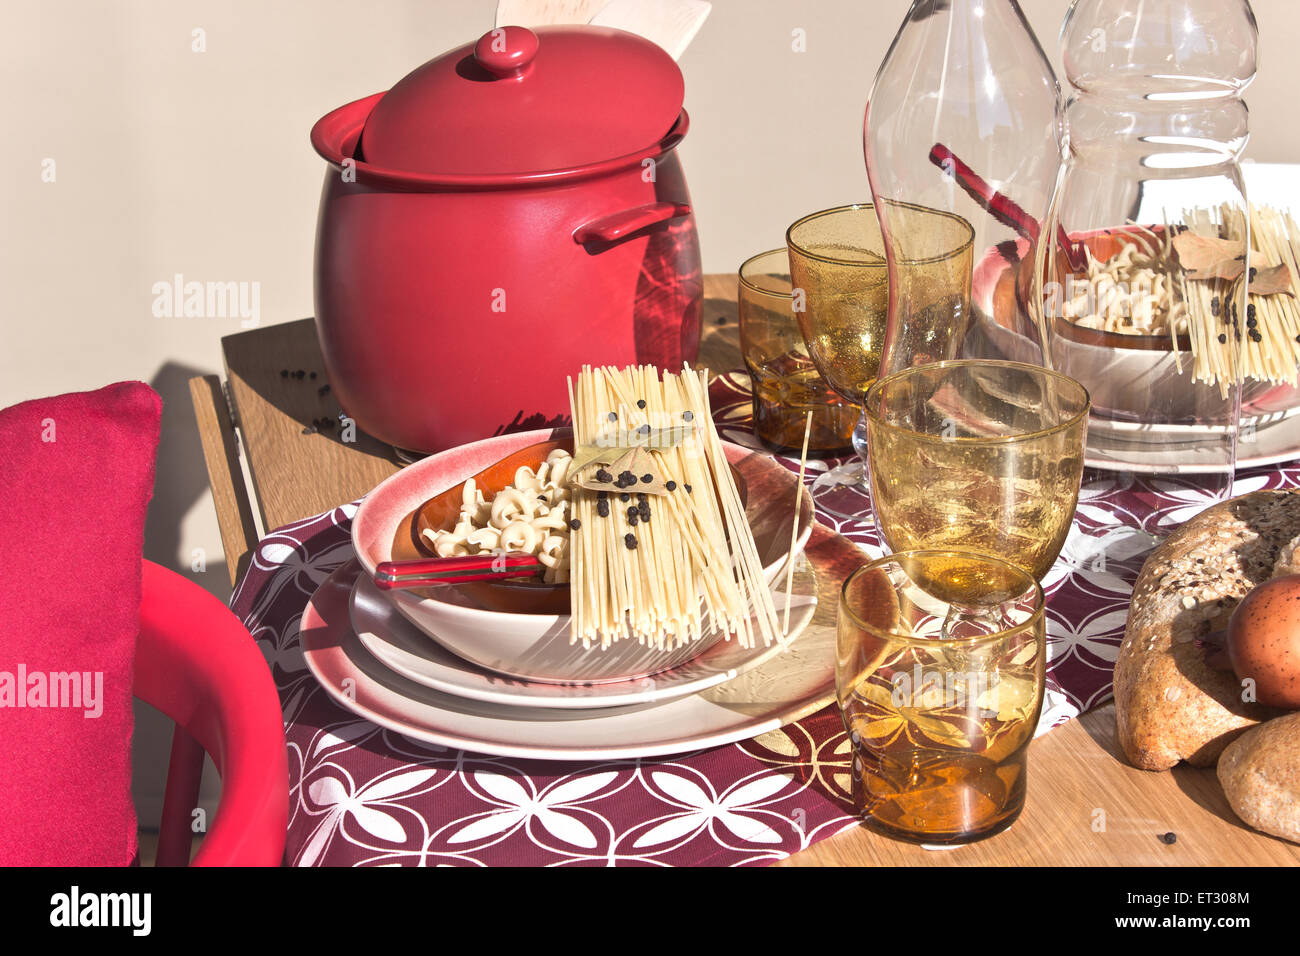 La table, avec des assiettes de spaghetti sec Banque D'Images